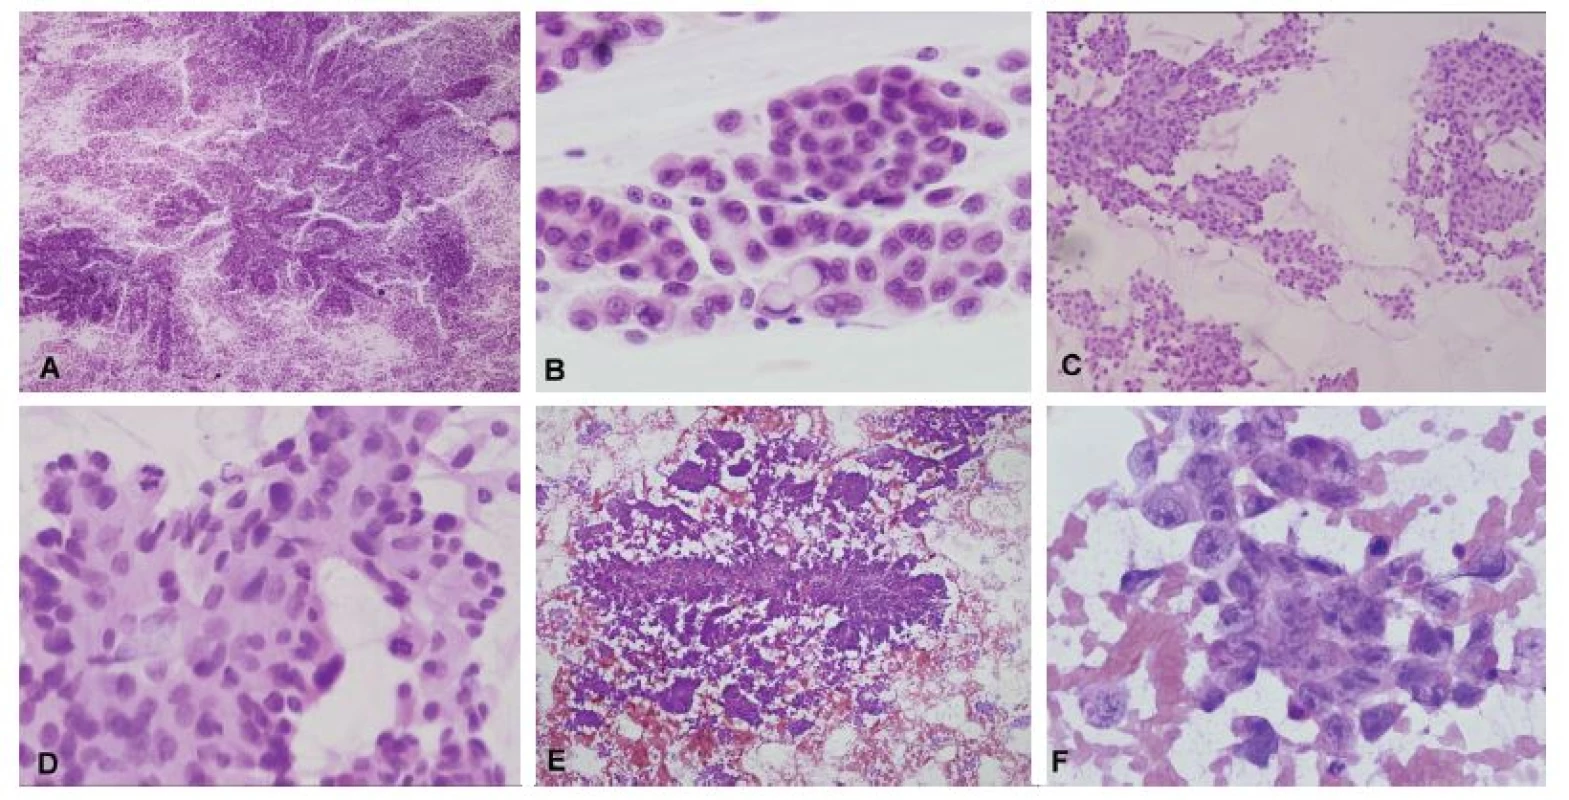 (A, B) Biopsia supratentoriálneho ložiska u 35-ročnej ženy. V náterovej cytológii boli zachytené papilárne formácie kohezívnych epiteloidných buniek
(A). V niektorých bunkách bola prítomná intracelulárna produkcia mucínu (B). Peroperačná diagnóza: metastáza adenokarcinómu. Definitívna diagnóza: metastáza
papilárneho adenokarcinómu pľúc. (C, D) Biopsia solitárneho ložiska u 63-ročného muža. V cytológii zachytené kohezívne plachtovité formácie epiteloidních
buniek. Ložiskovo naznačené glandulárne/acinárne štruktúry (C). Išlo o mierne atypické bunky s objemnou kolumnárnou cytoplazmou s početnými
mitózami (D). Peroperačná diagnóza: metastáza karcinómu, skôr adenokarcinómu. Definitívna diagnóza: metastáza acinárneho karcinómu prostaty. (E, F)
Biopsia supratentoriálneho ložiska u 19-ročného muža s anamnézou testikulárneho seminómu. V cytológii zachytené naznačene papilárne formácie epiteloidných
buniek (E). Jednalo sa o výrazne atypické bunky s prominentními jadierkami a svetlo eozinofilnou cytoplazmou (F). Peroperačná diagnóza: metastáza
epitelového nádoru, mohlo by sa jednať o germ-cell tumor. Definitívna diagnóza: metastáza embryonálneho karcinómu.